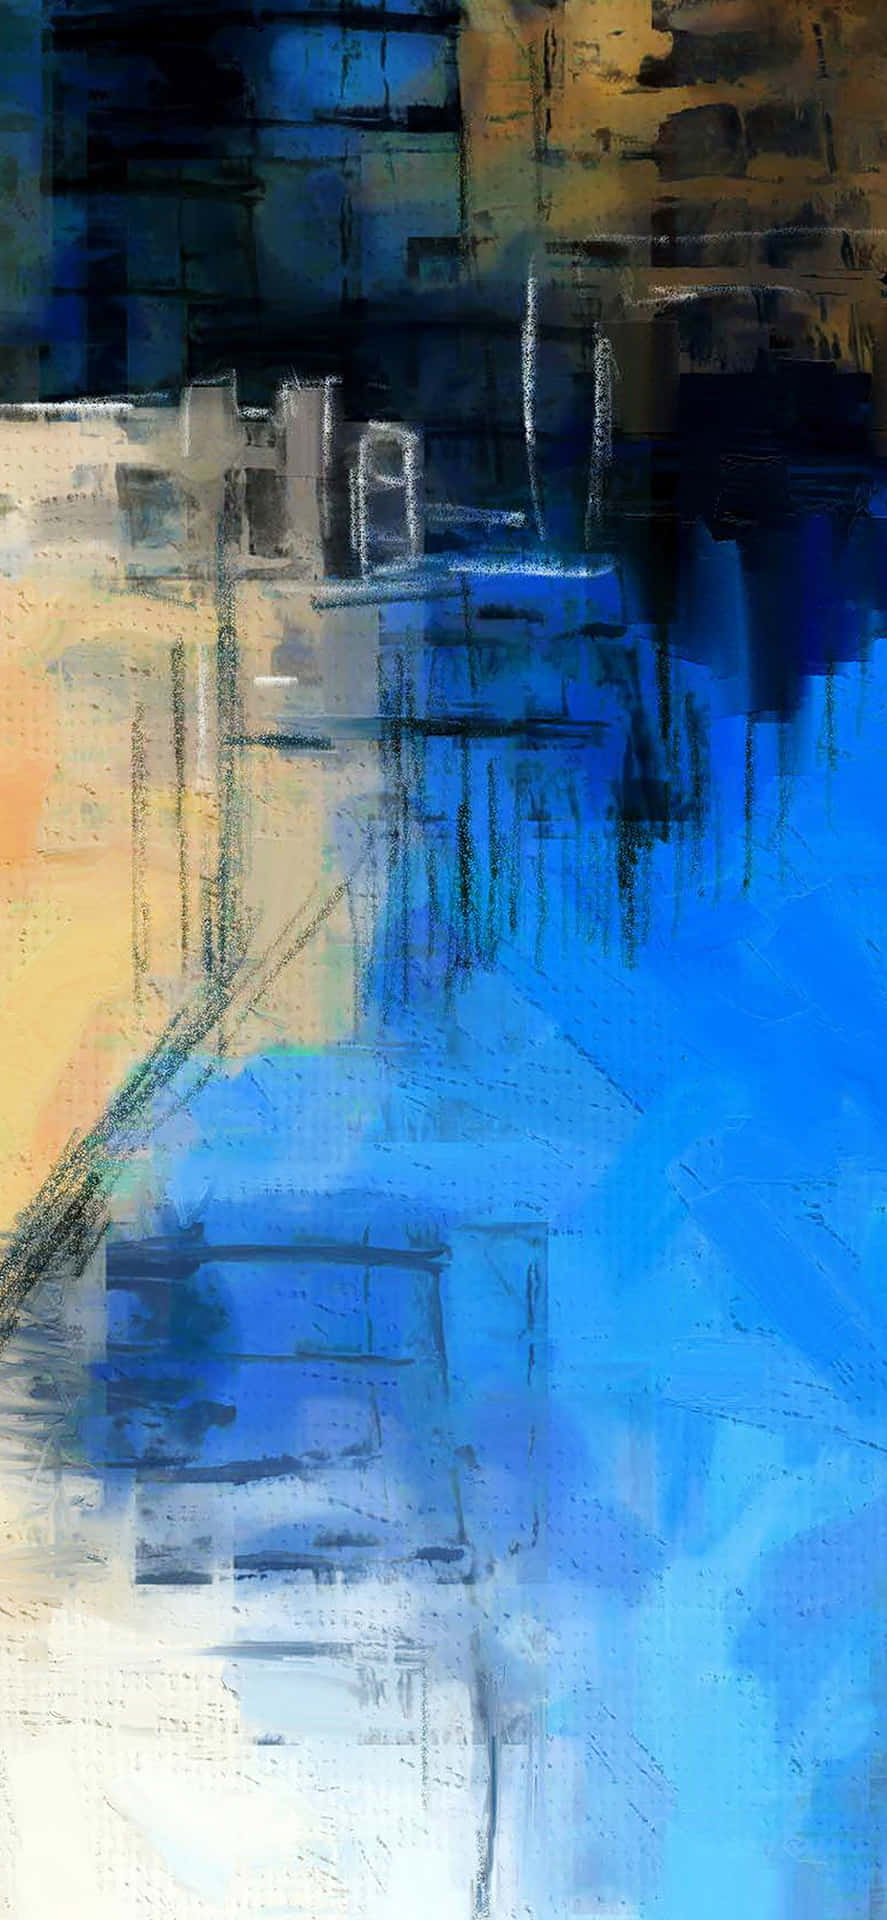 Ettljust Och Färgglatt Aquarellmålning Av En Overklig Landskap, Perfekt För En Iphone Bakgrundsbild. Wallpaper